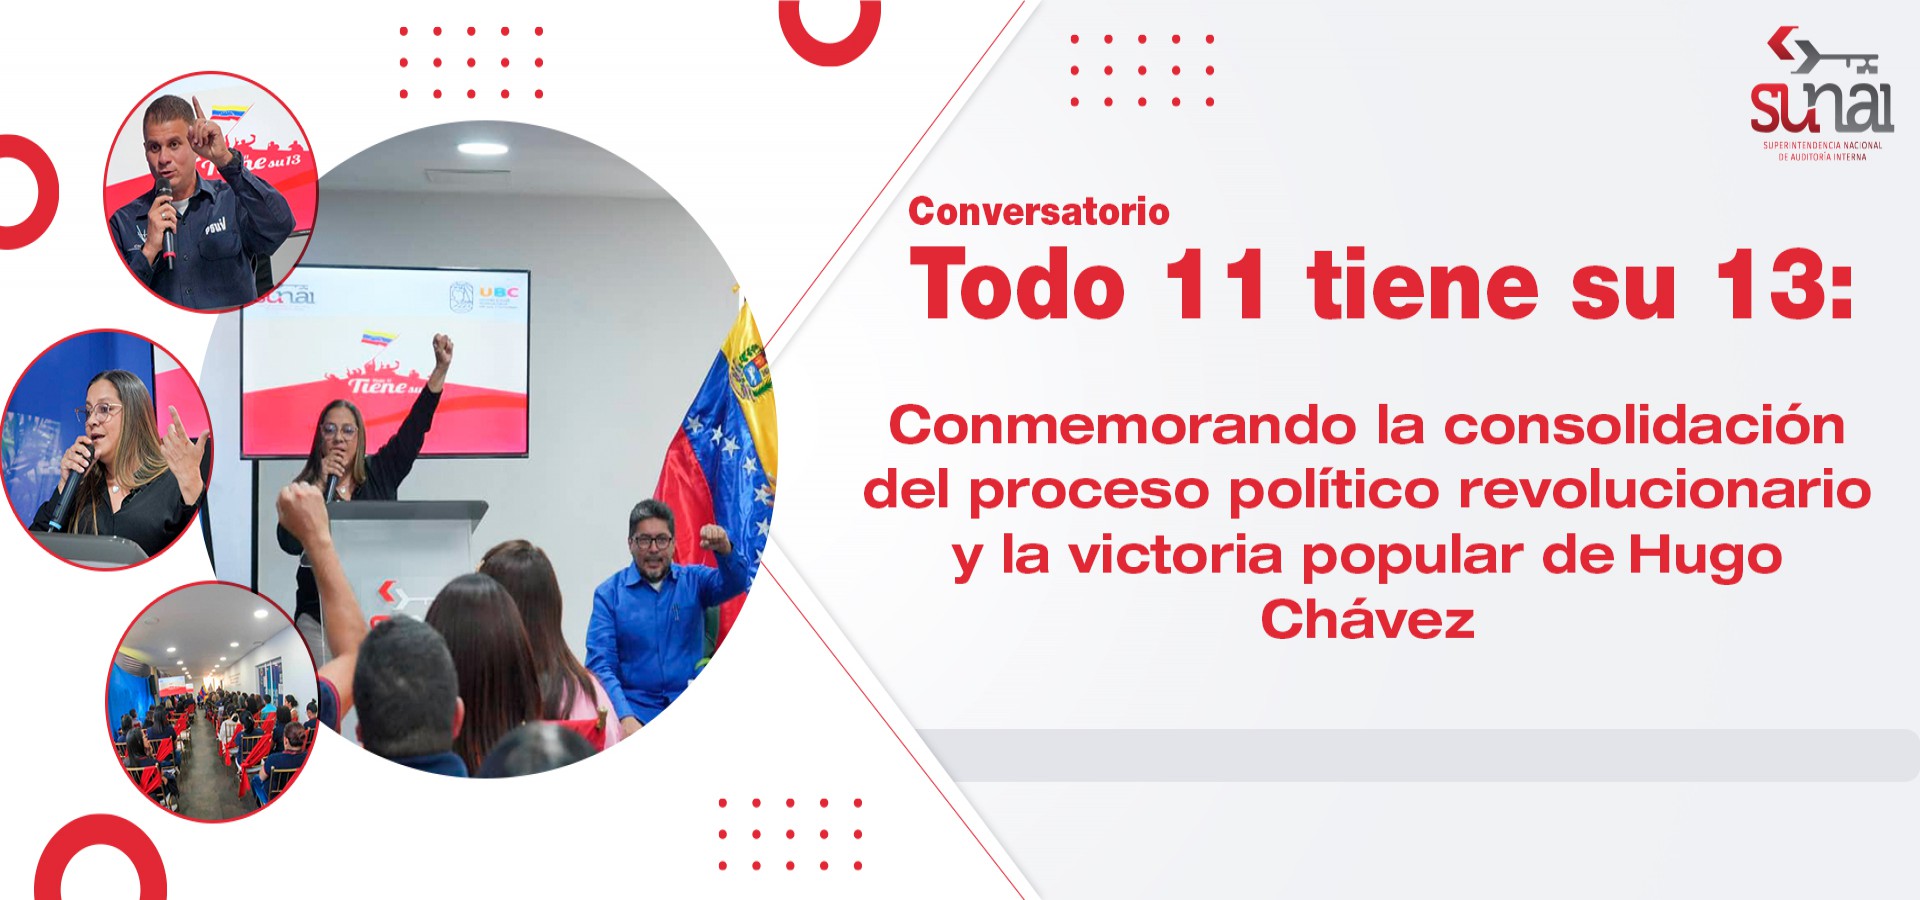 Conversatorio Todo 11 tiene su 13: Conmemorando la consolidación del proceso político revolucionario y la victoria popular de Hugo Chávez